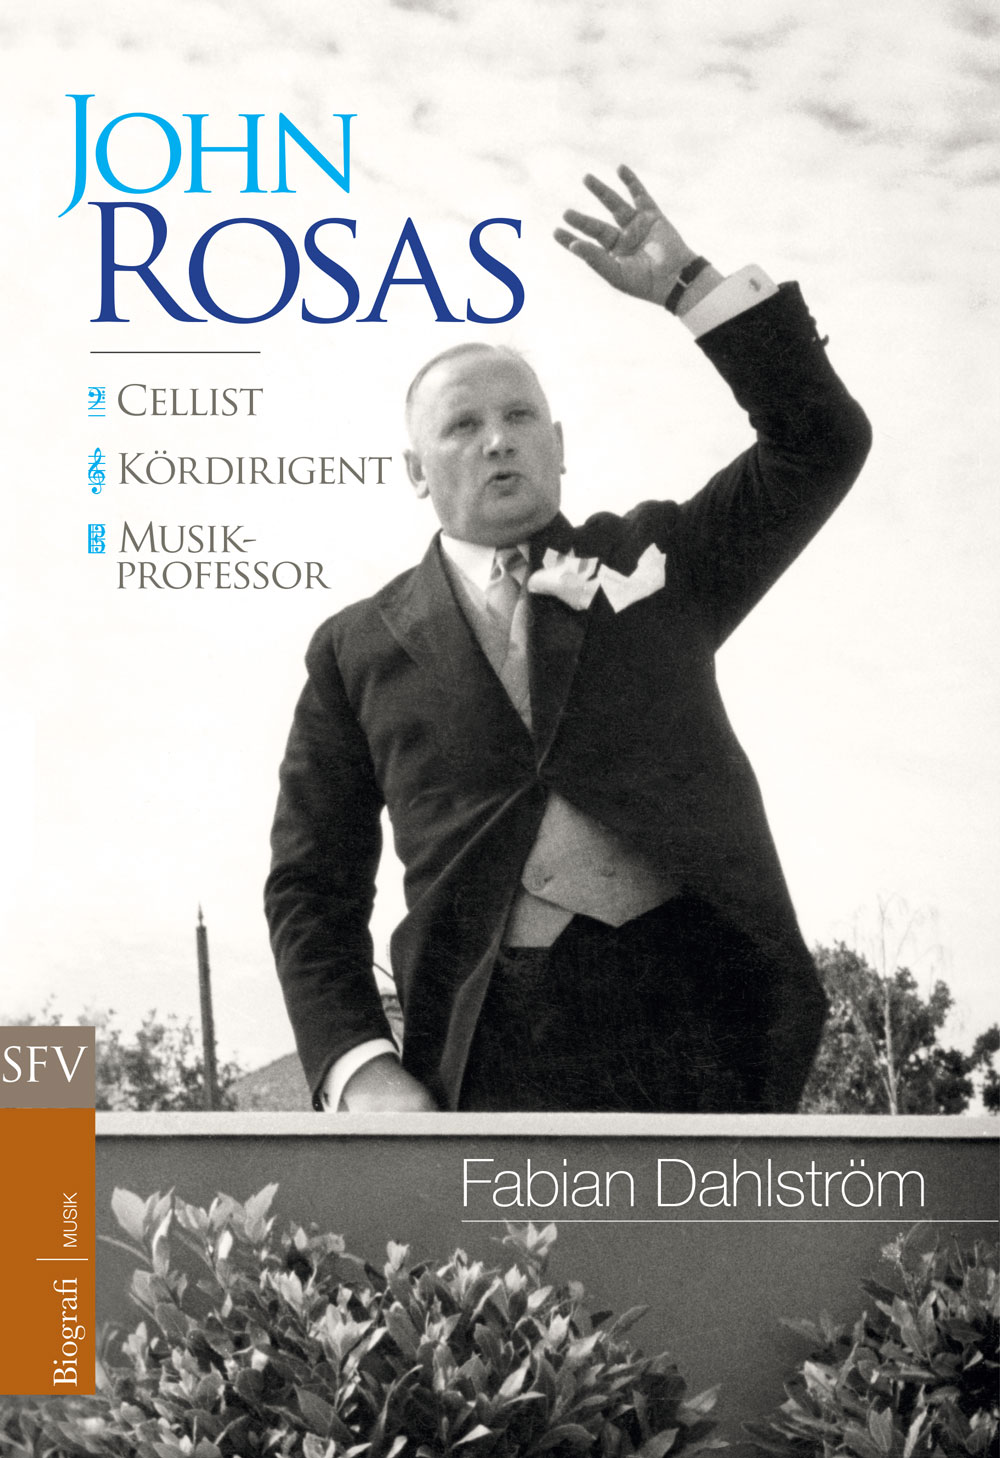 Pärmen till John Rosas-biografin visar John Rosas i dirigenttagen bakom ett utomhuspodium.